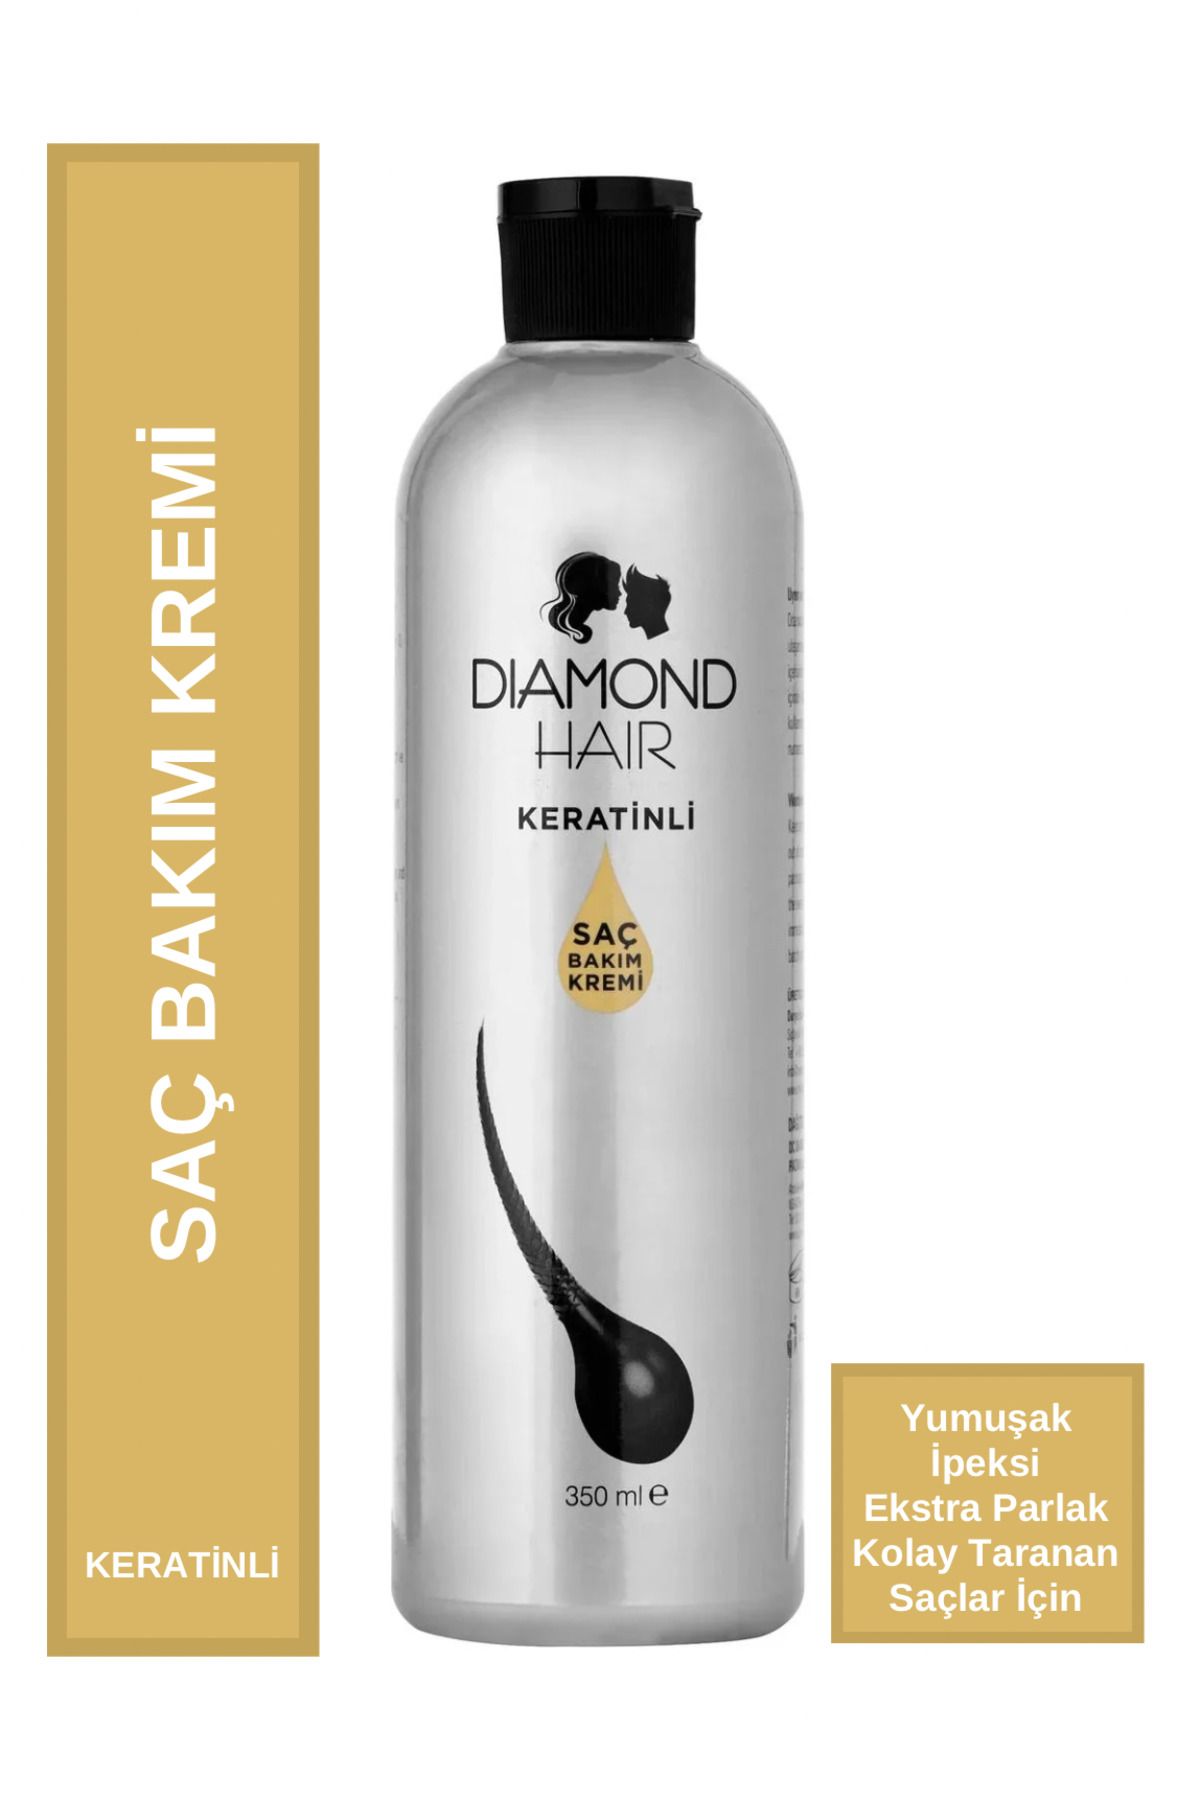 DIAMOND HAIR Keratinli Saç Kremi - Nemlendirici, Yumuşatıcı, Parlaklık Verici - Pürüzsüz, Kolay Taranan Saçlar